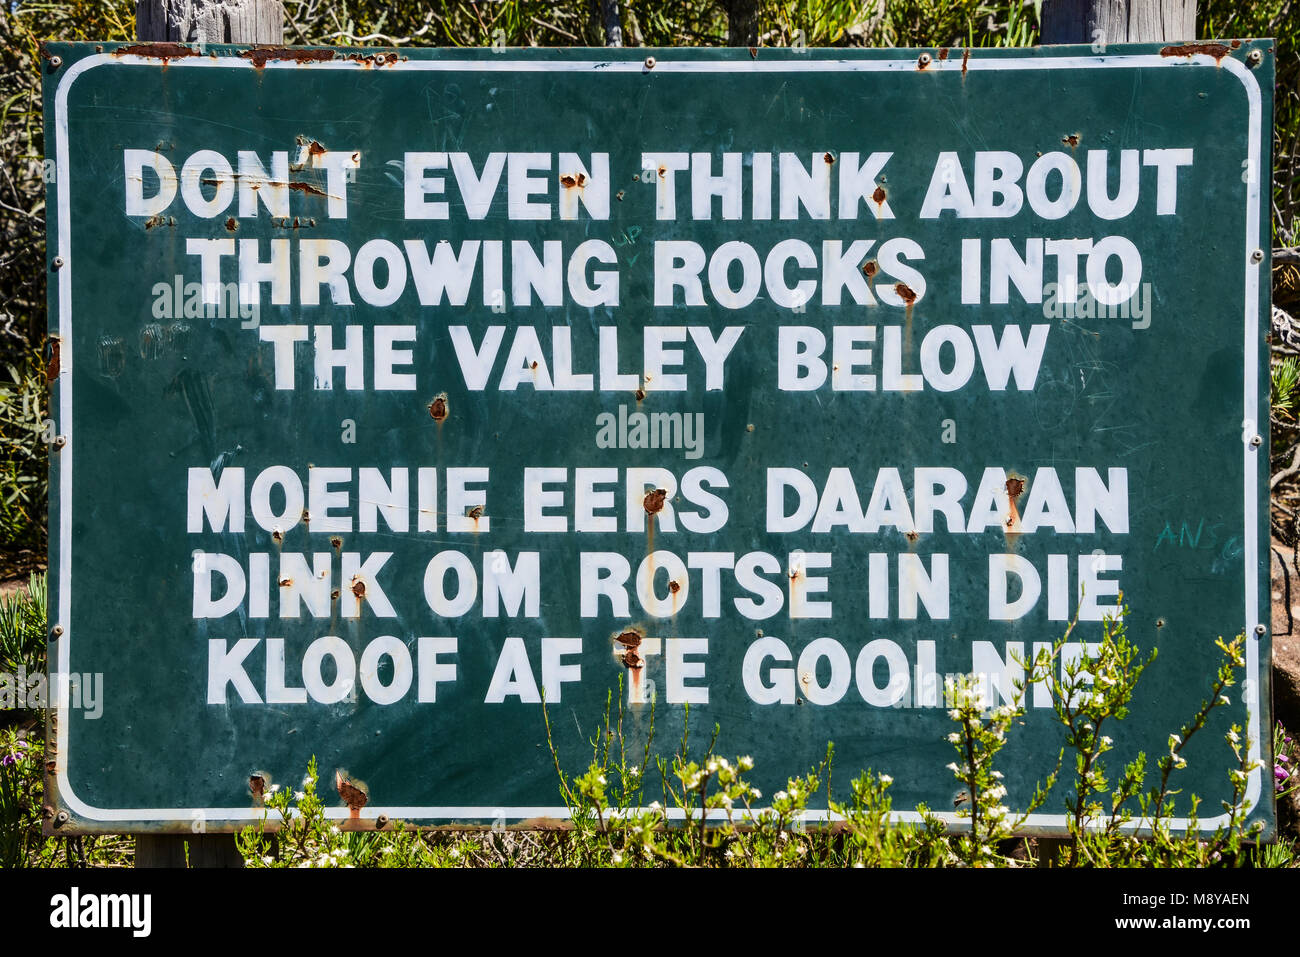 Ein Schild in Englisch und Afrikaans im Tal der Verwüstung, Südafrika, das liest noch nicht einmal an das Werfen Steine ins Tal denken Stockfoto